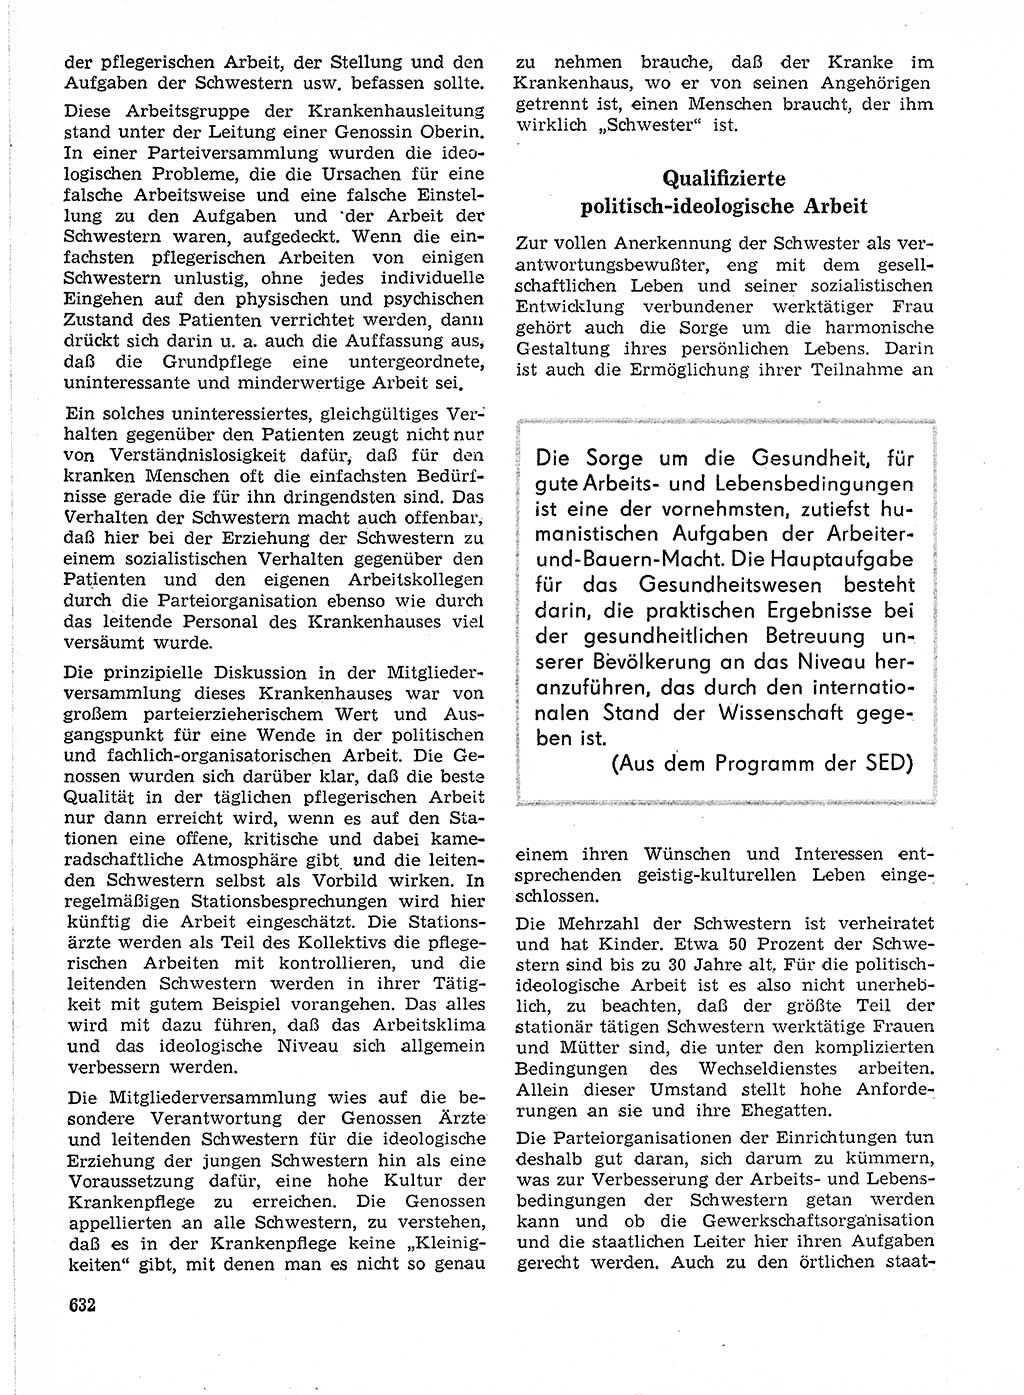 Neuer Weg (NW), Organ des Zentralkomitees (ZK) der SED (Sozialistische Einheitspartei Deutschlands) für Fragen des Parteilebens, 21. Jahrgang [Deutsche Demokratische Republik (DDR)] 1966, Seite 632 (NW ZK SED DDR 1966, S. 632)